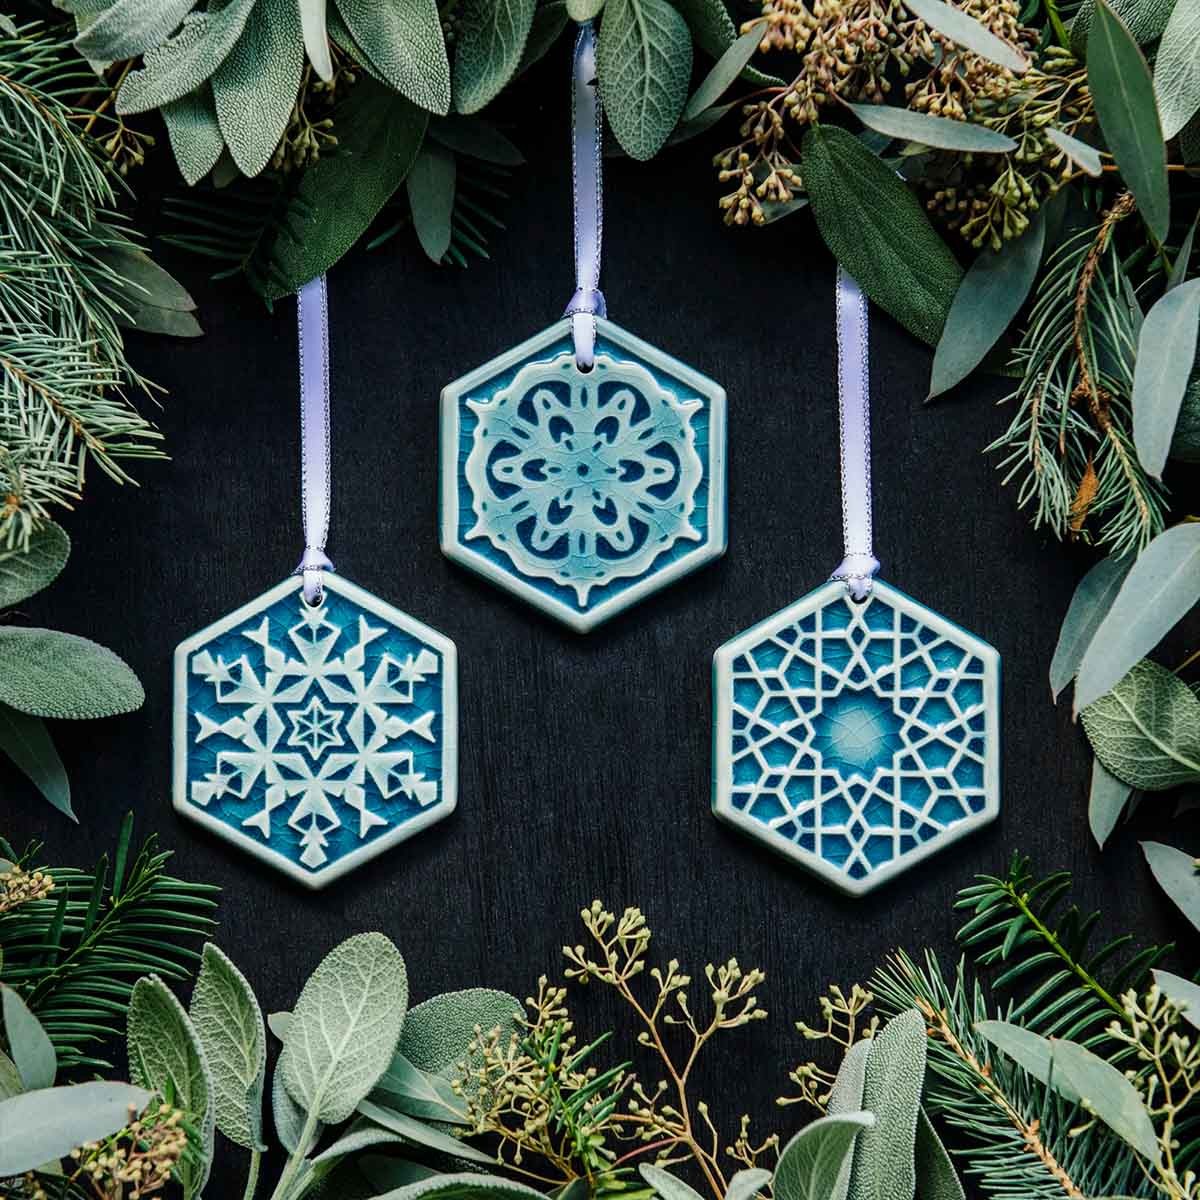 Pewabic's three 2022 Snowflake ornaments hang among holiday greenery.